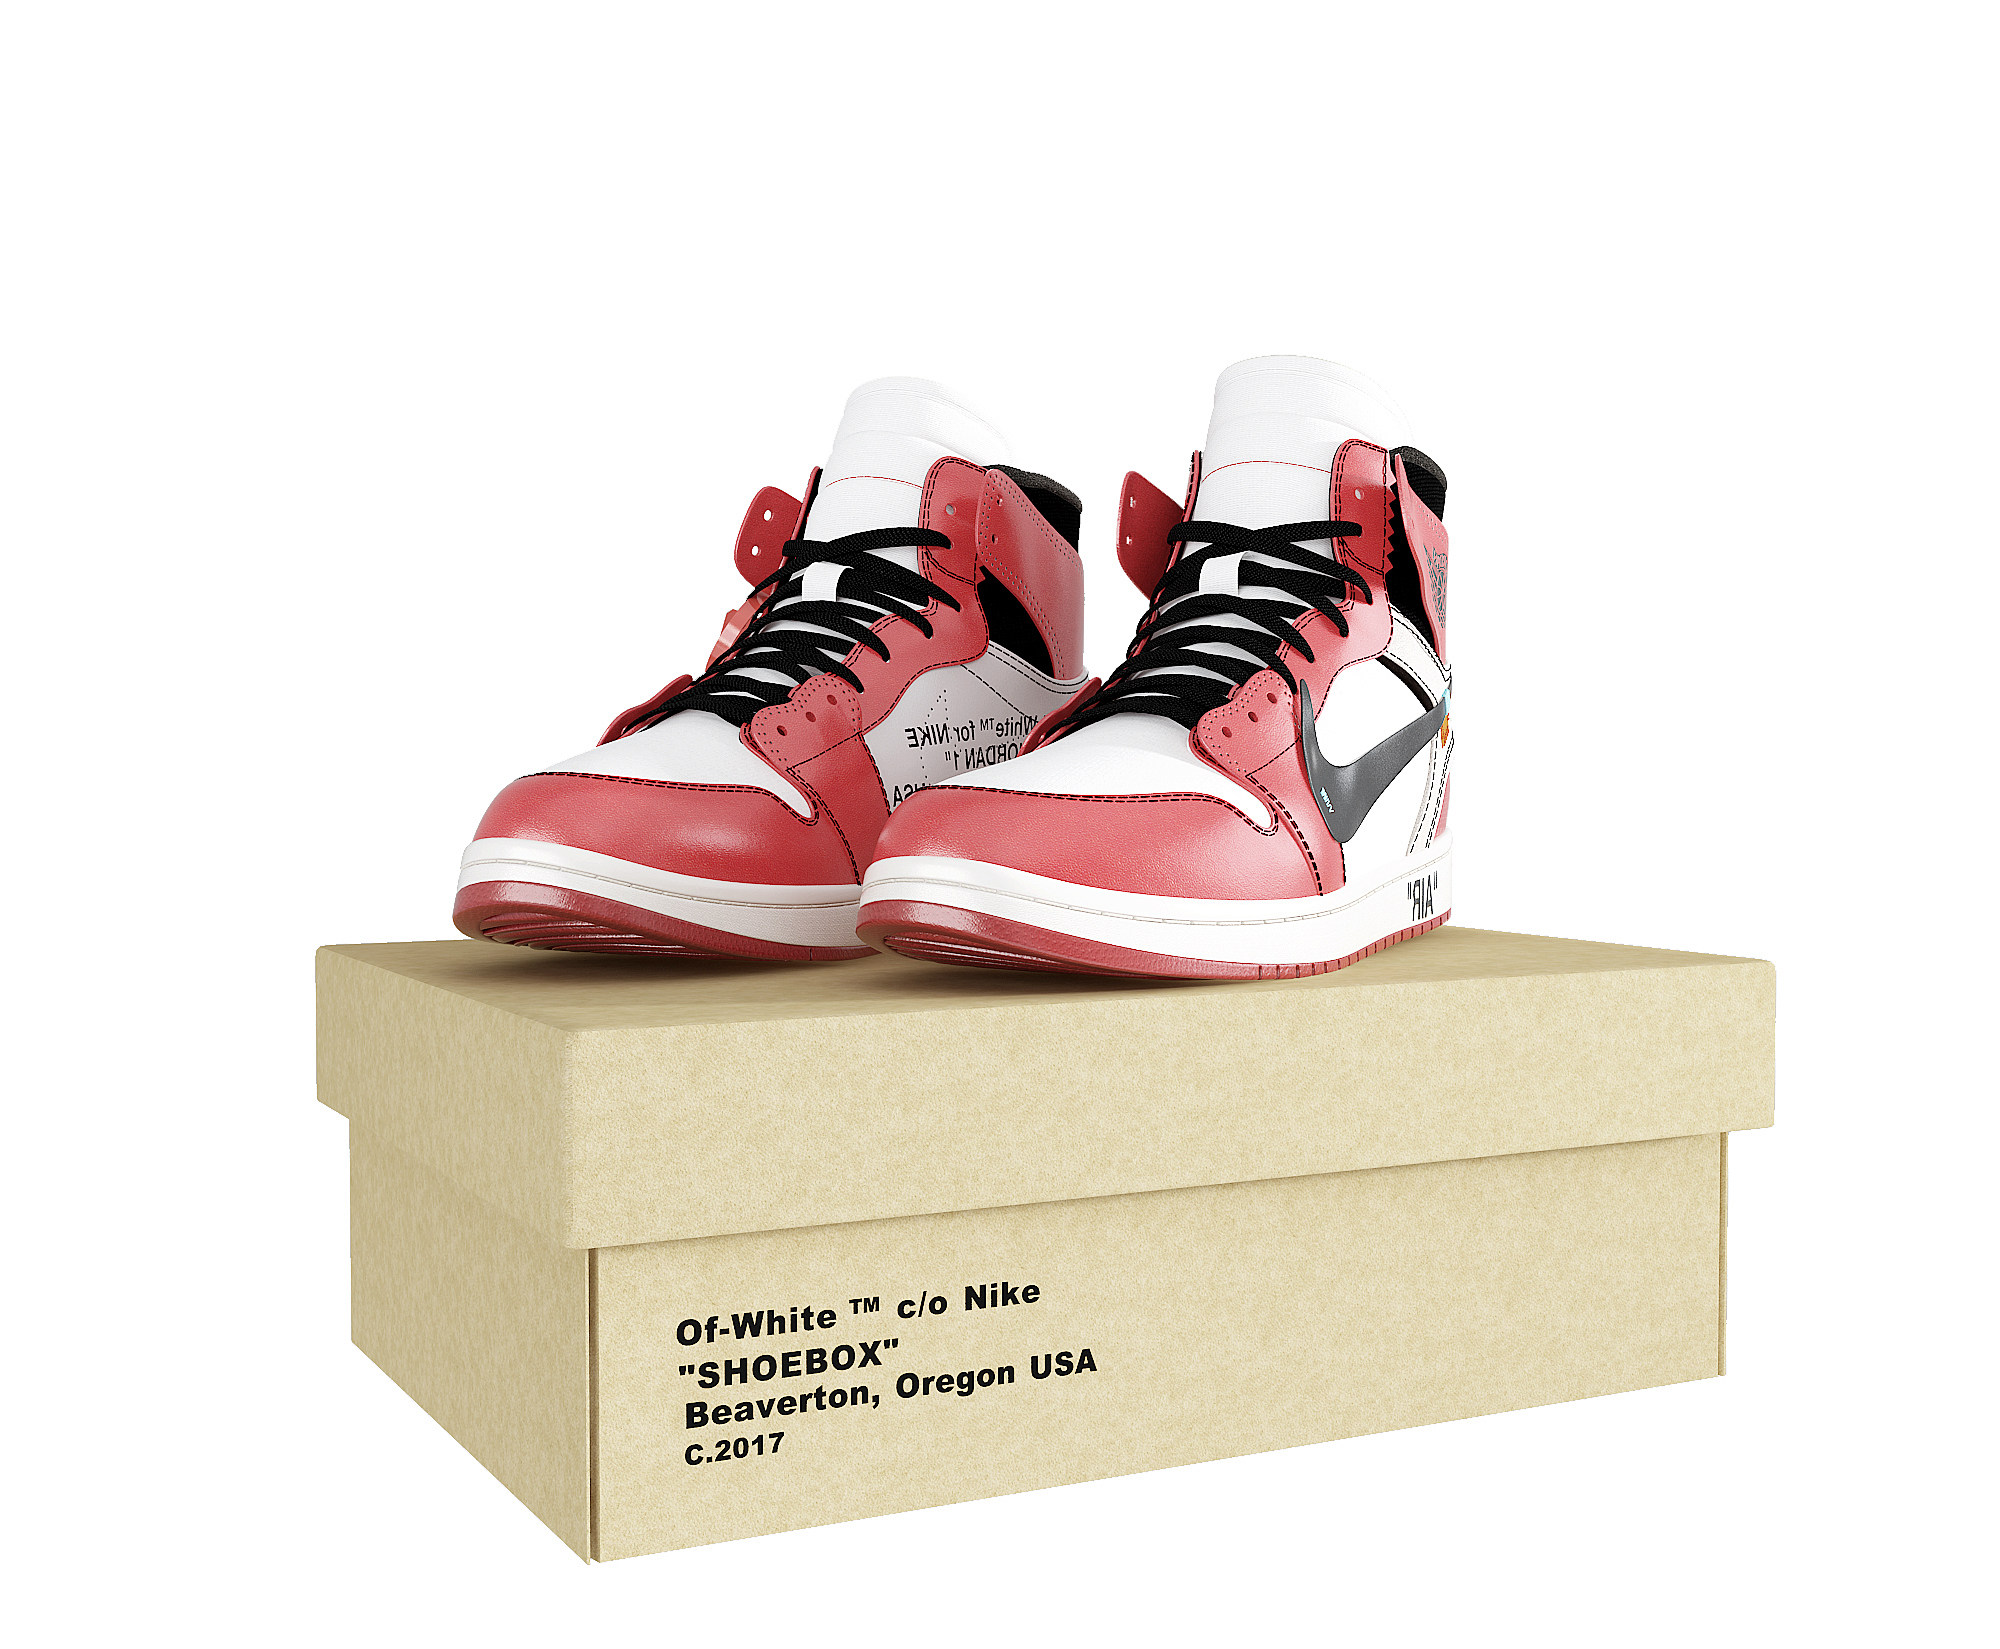 Air jordan 男子运动鞋,运动鞋,男子运动鞋3d模型下载